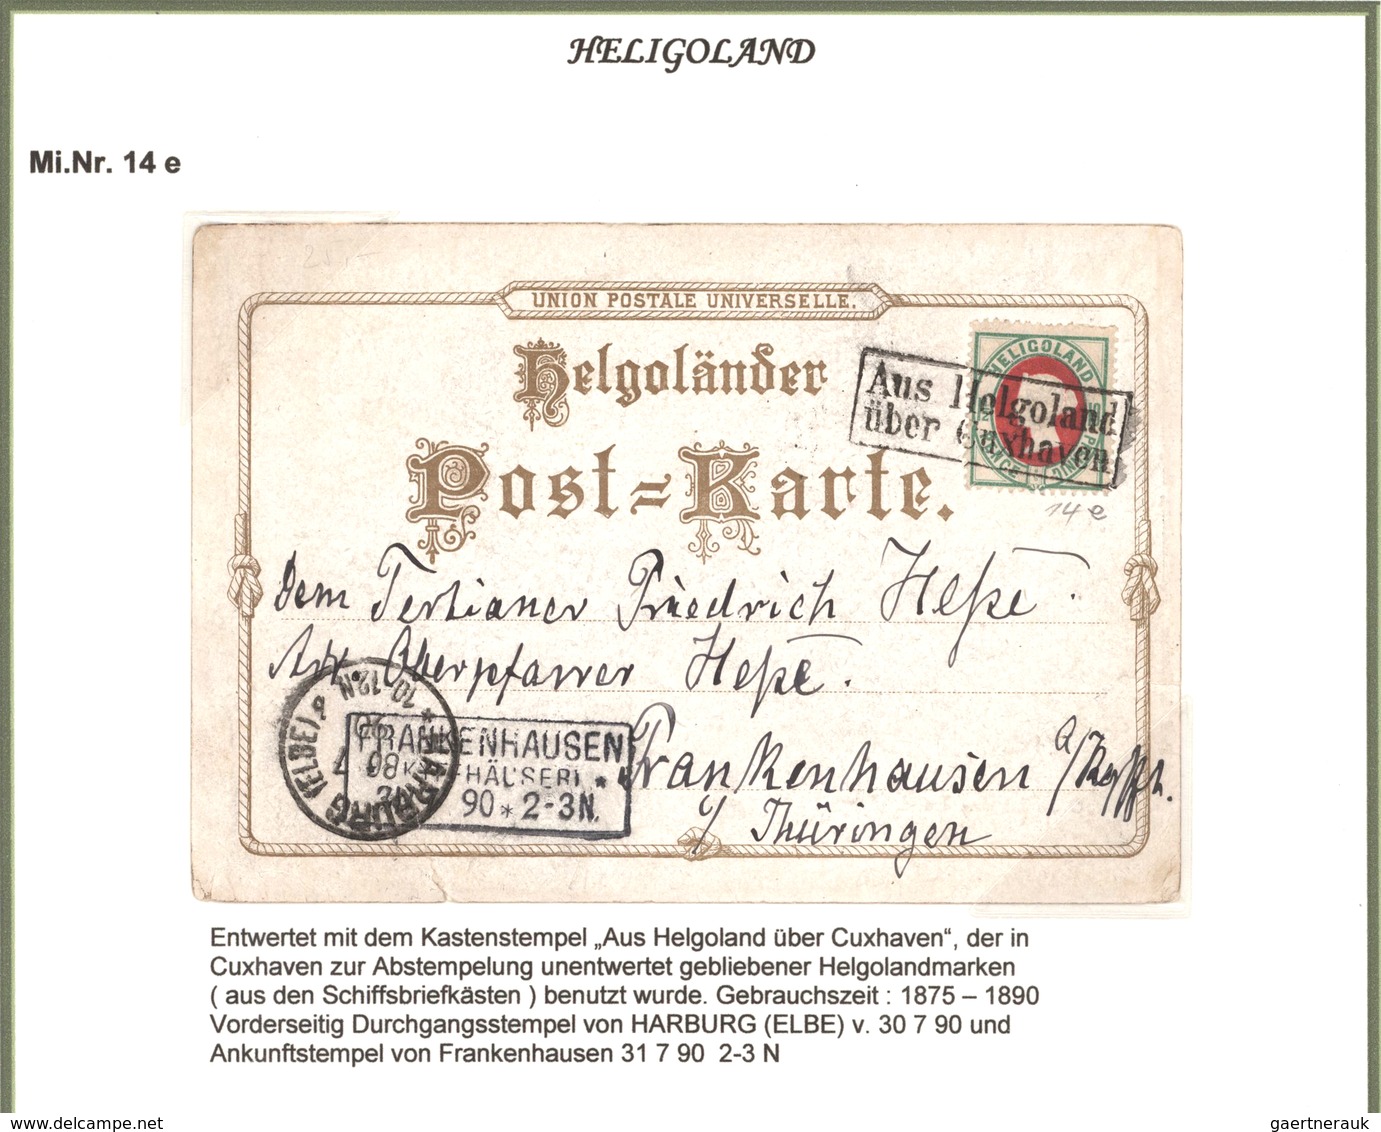 Helgoland - Marken und Briefe: 1809-1890: Hochspezialisierte und umfangreiche Sammlung von Briefen,